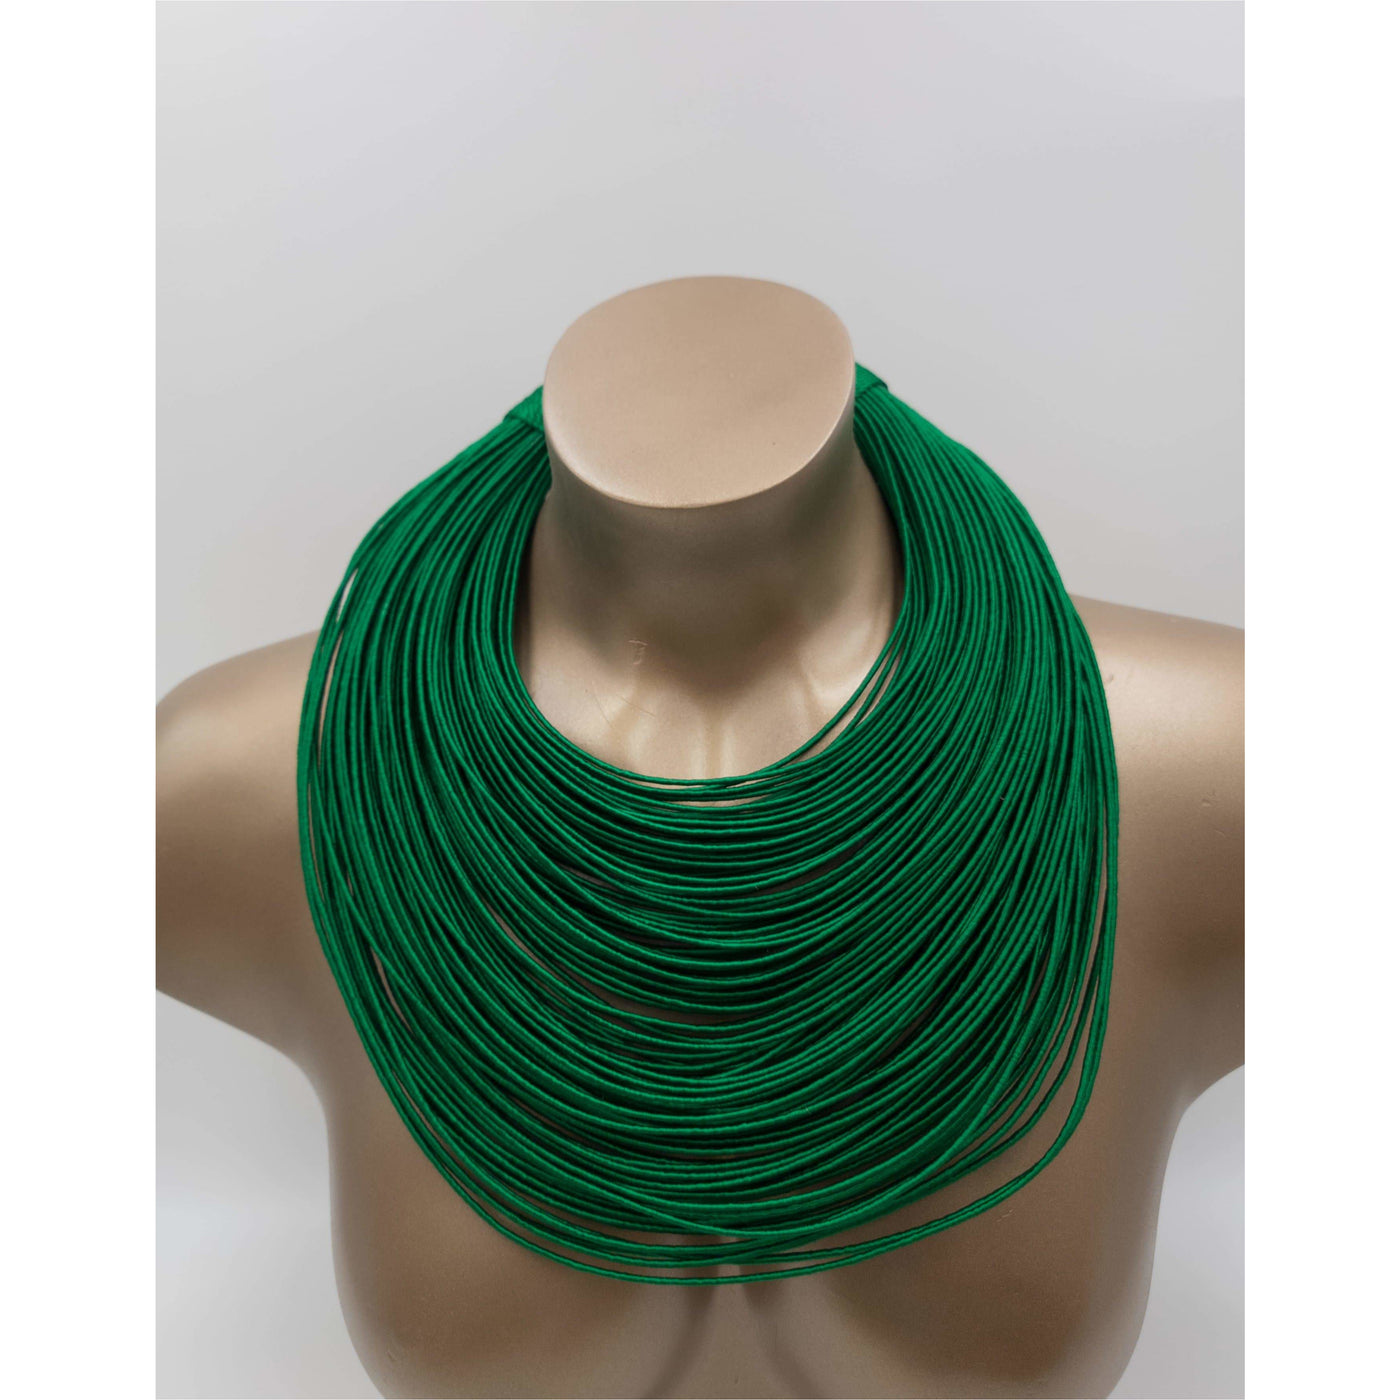 New Bantama 120 Multistrand Thread Necklace - Trufacebygrace